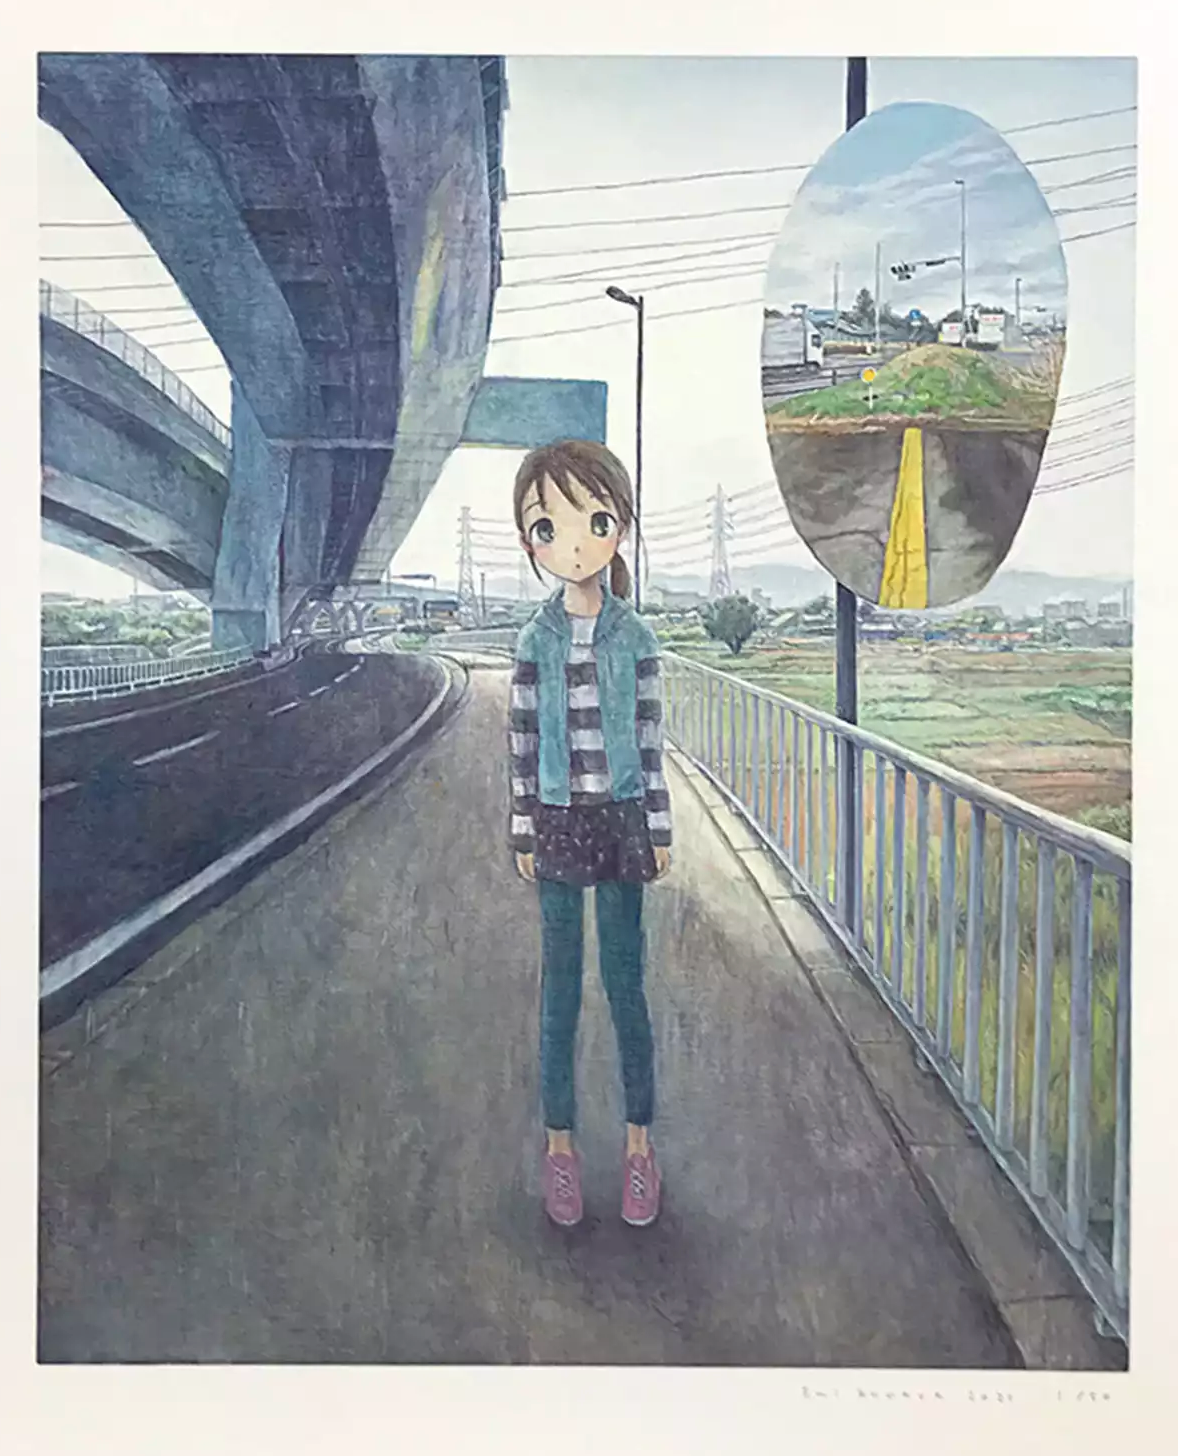 EMI KURAYA Art Prints: A statue of a girl standing under the highway (bypass)